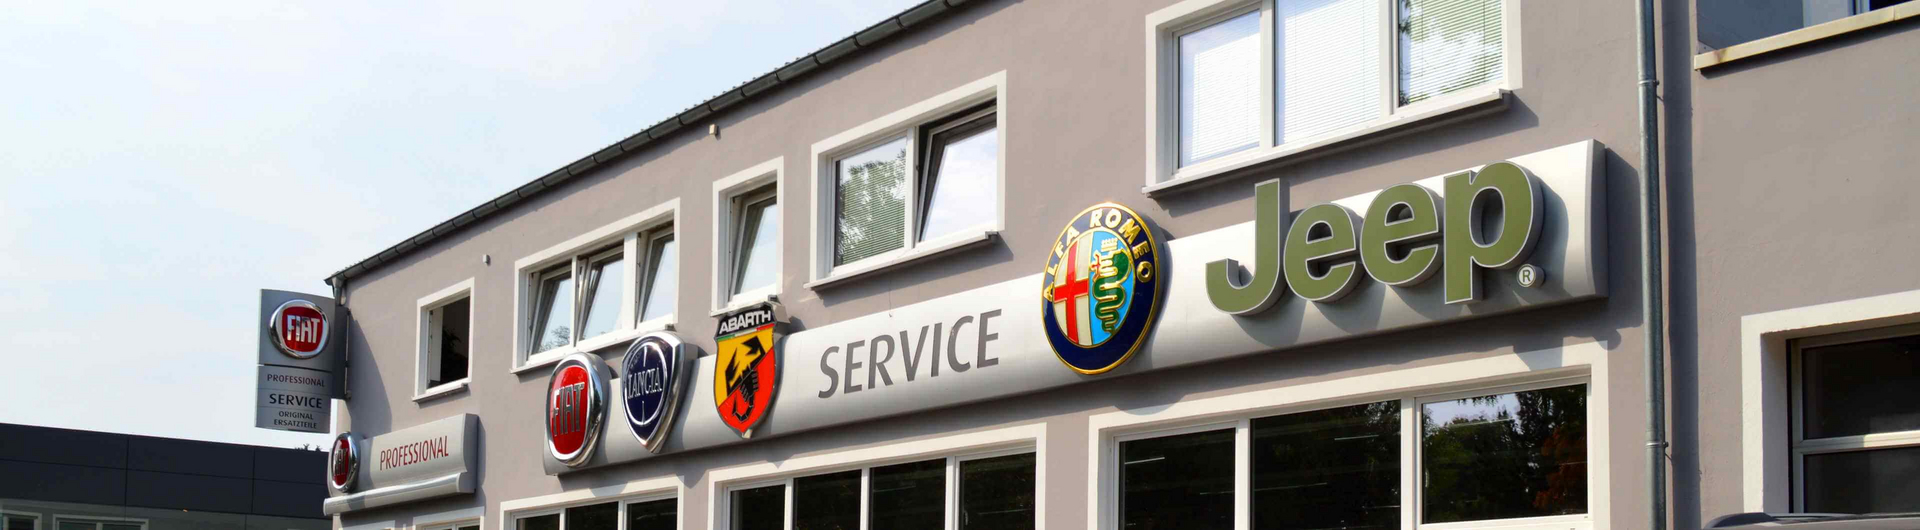 RKG Markenwelt - die Alfa Romeo Werkstatt in Bonn und Umgebung